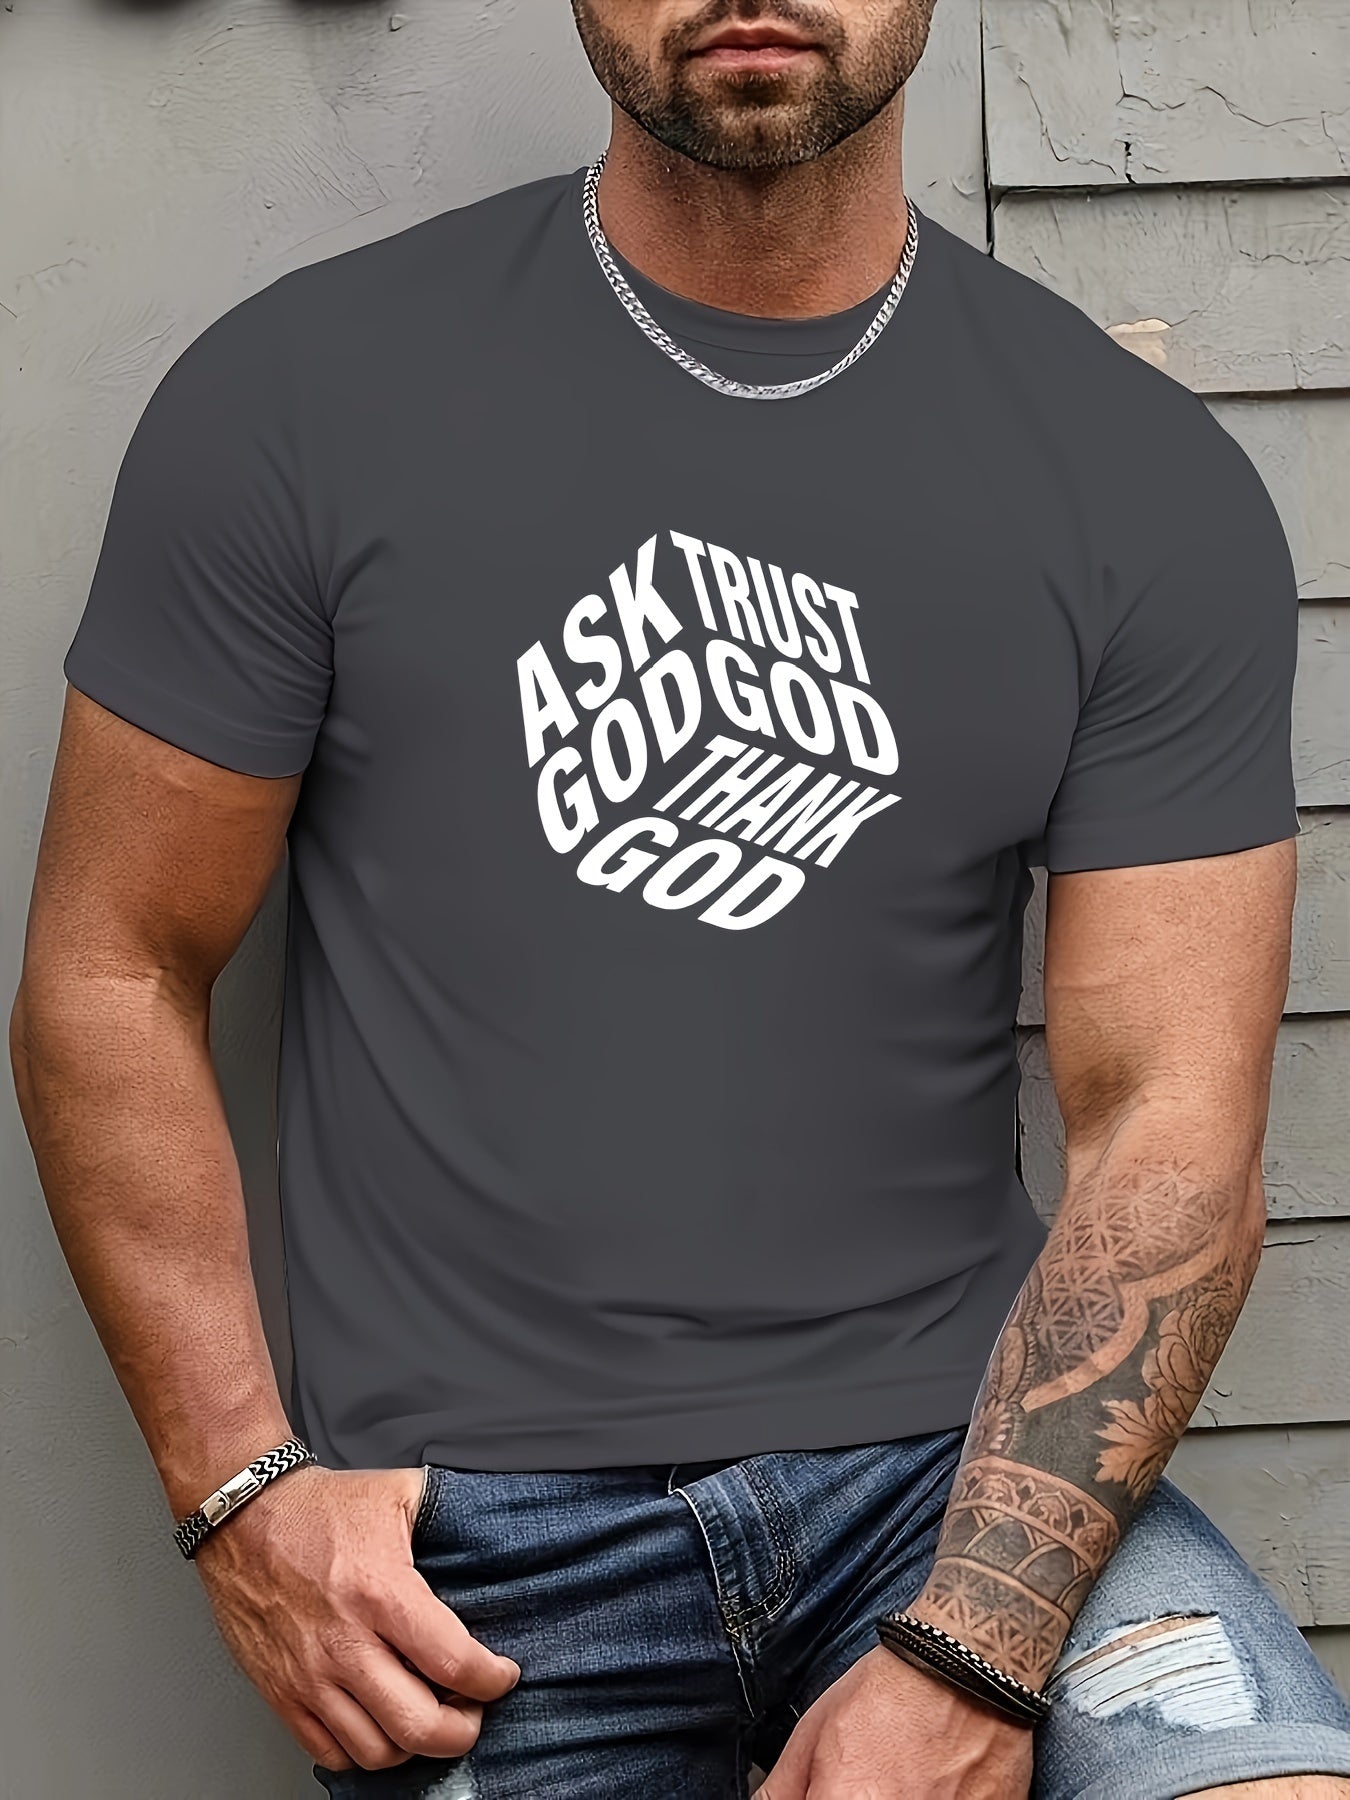 Ask Trust Thank God Men's Christian T-shirt claimedbygoddesigns